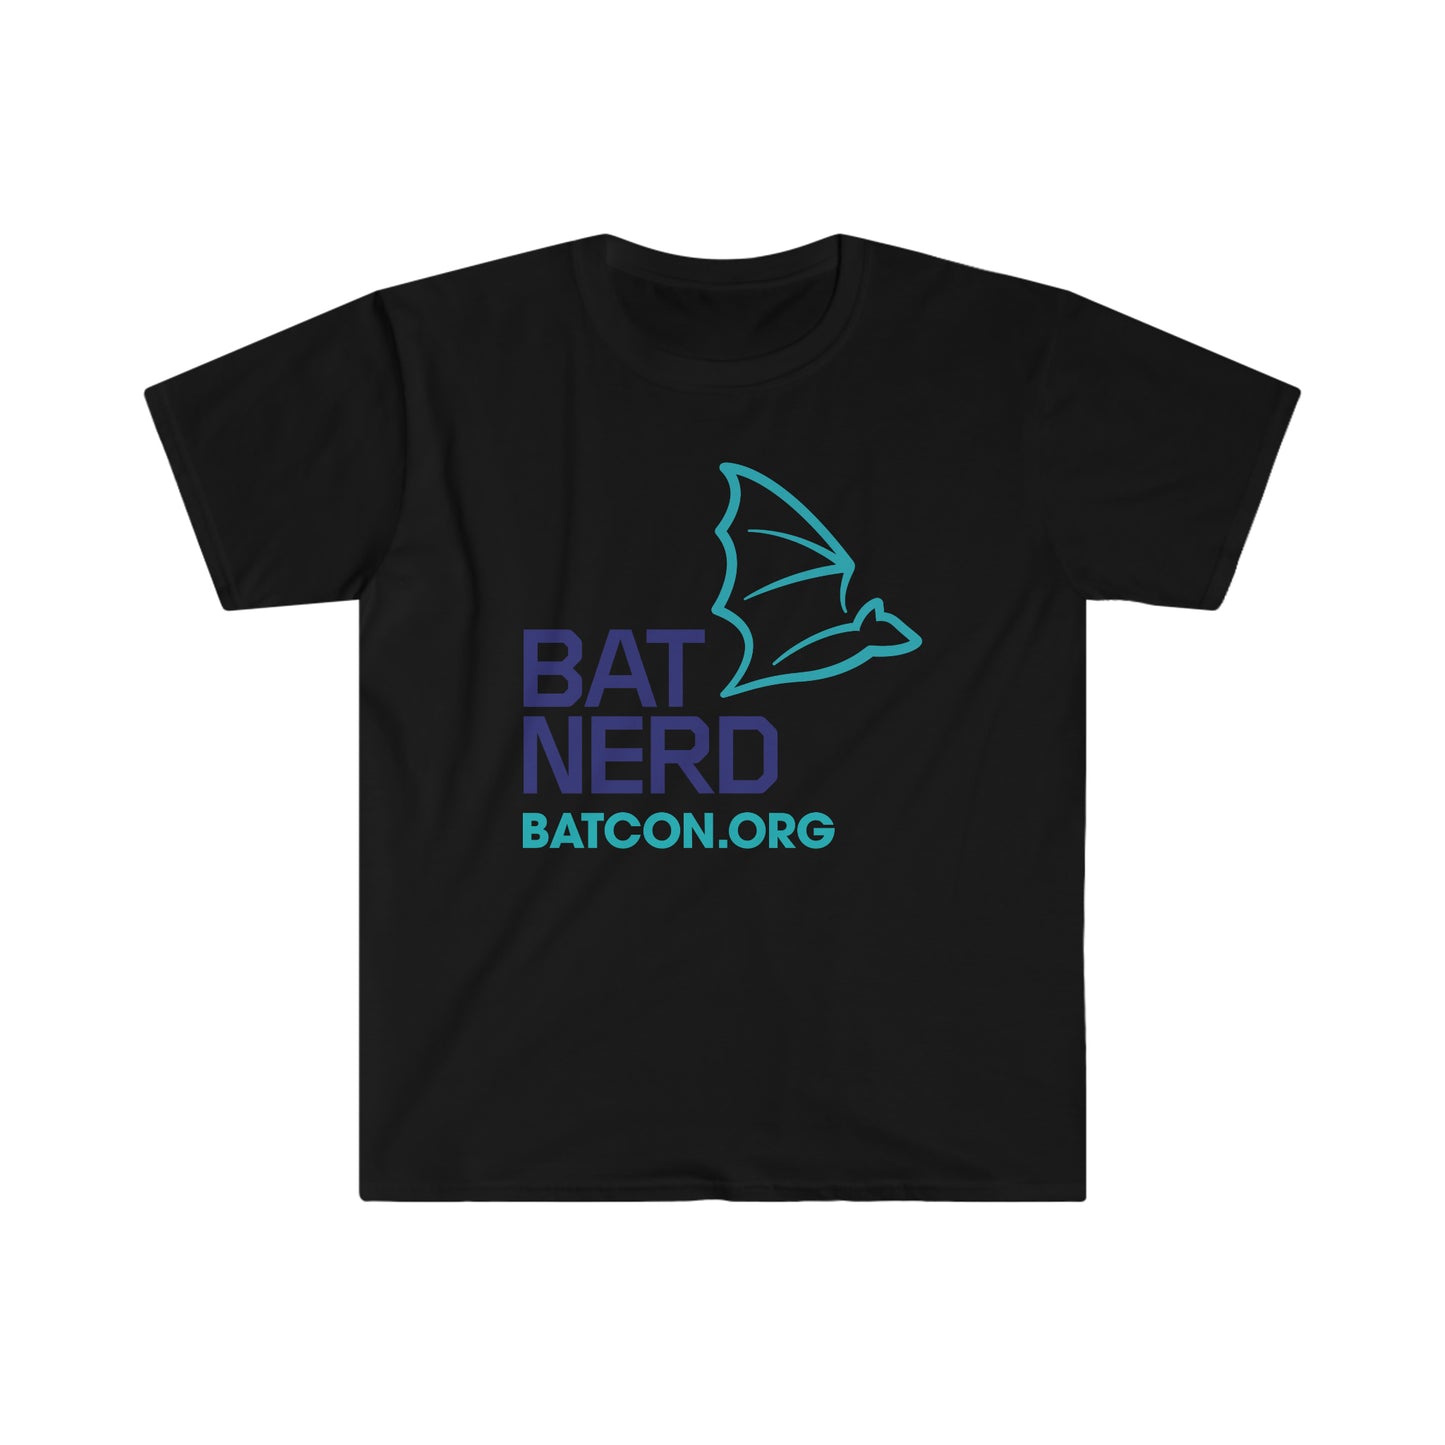 Bat Nerd - Camiseta unisex de estilo suave